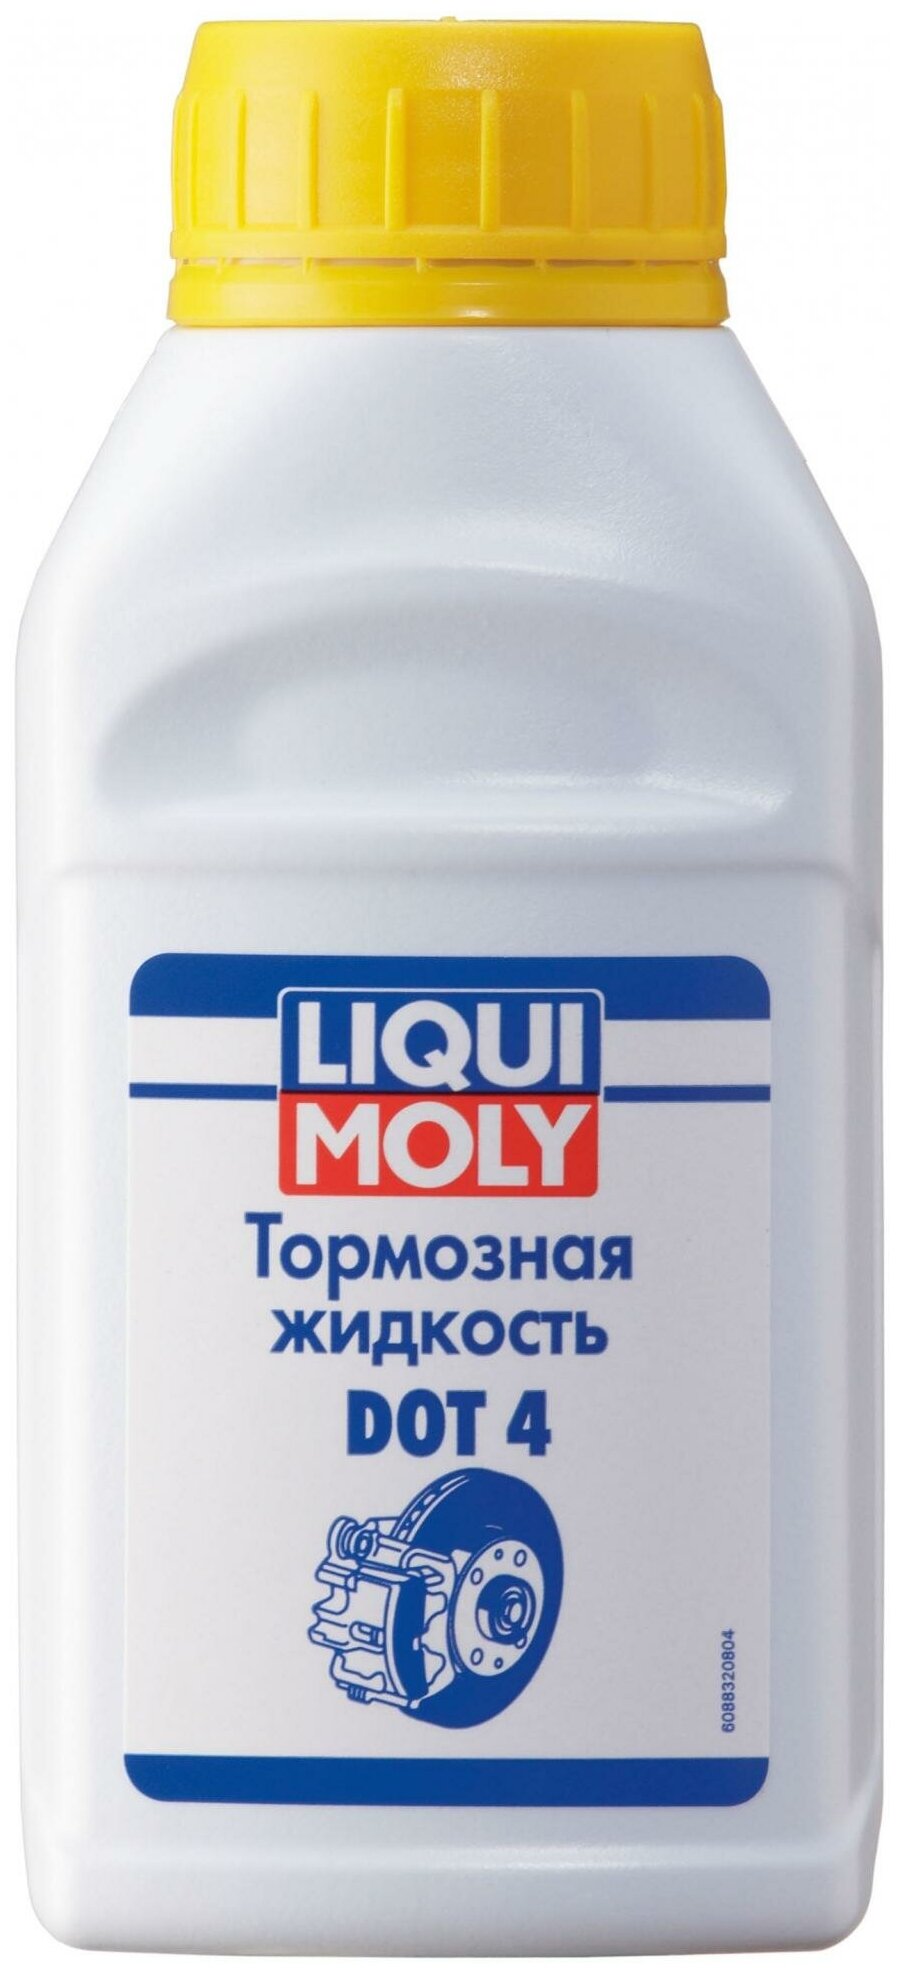 Тормозная жидкость Liqui Moly - фото №1